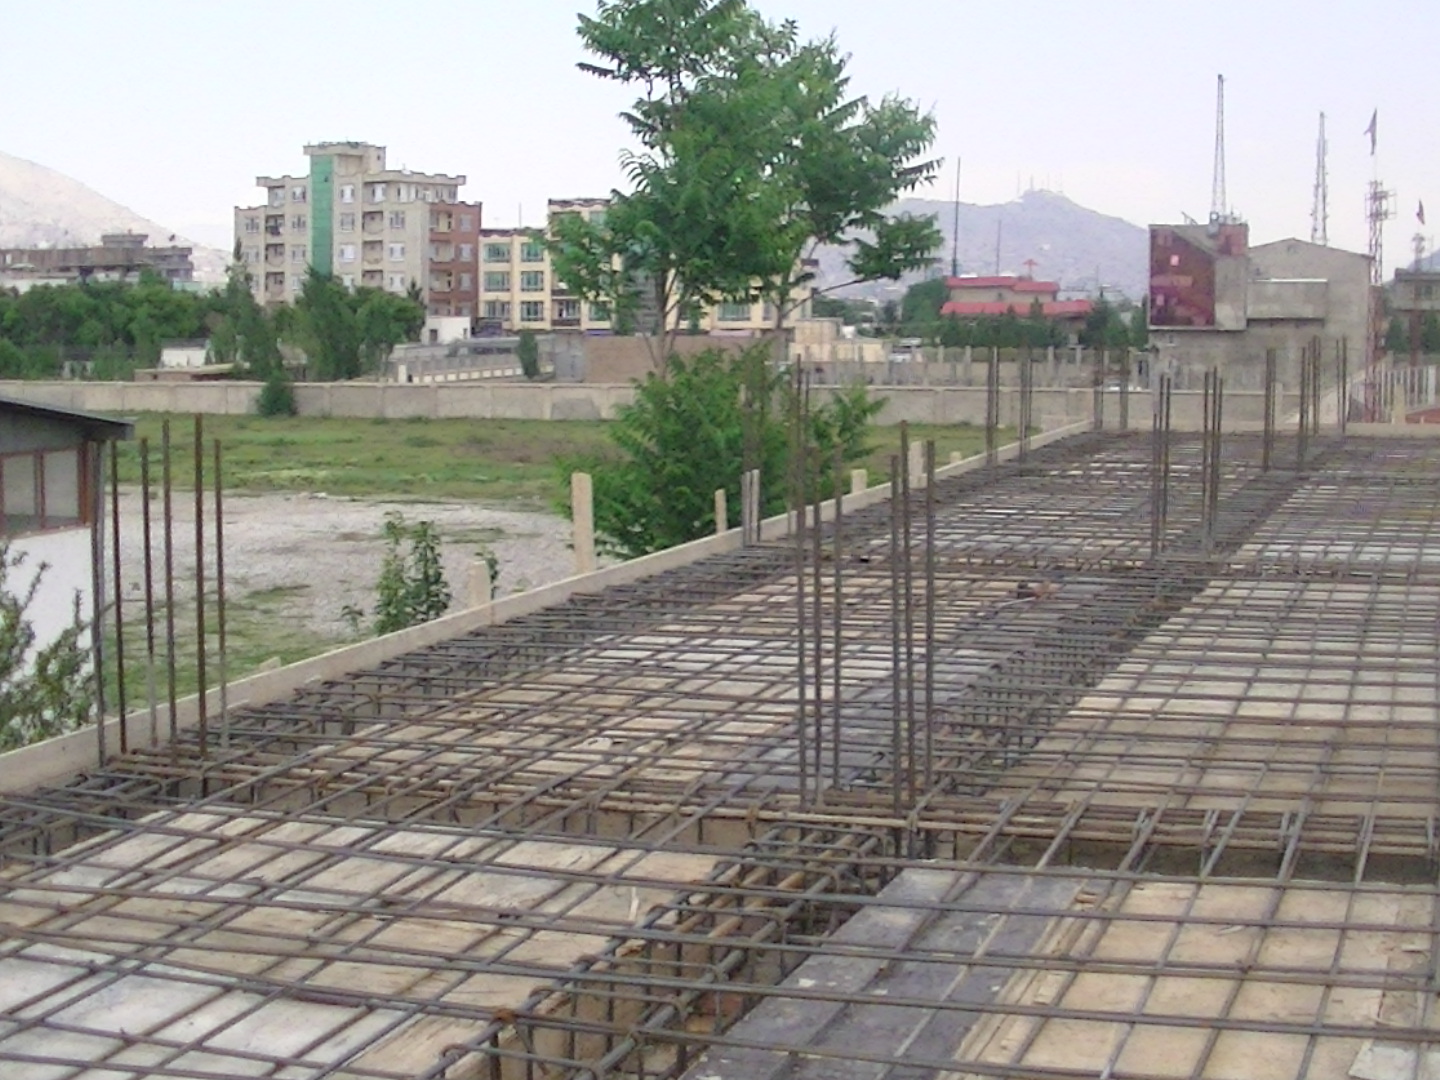 Sanierungsarbeiten 2008